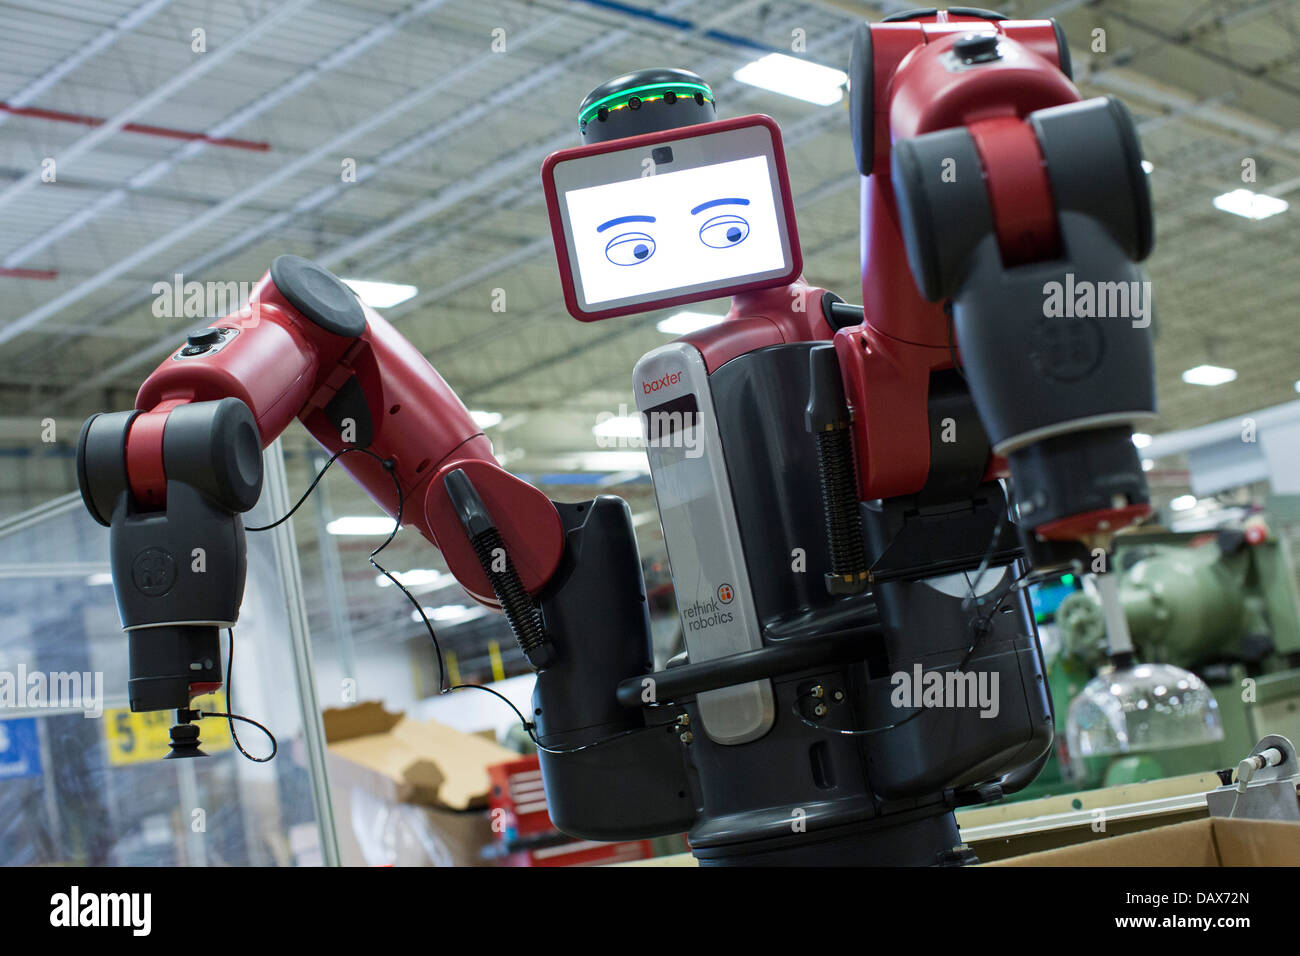 Baxter der Roboter von Rethink Robotics werkseitig Kunststoffspritzerei  Rodon Gruppe gemacht Stockfotografie - Alamy